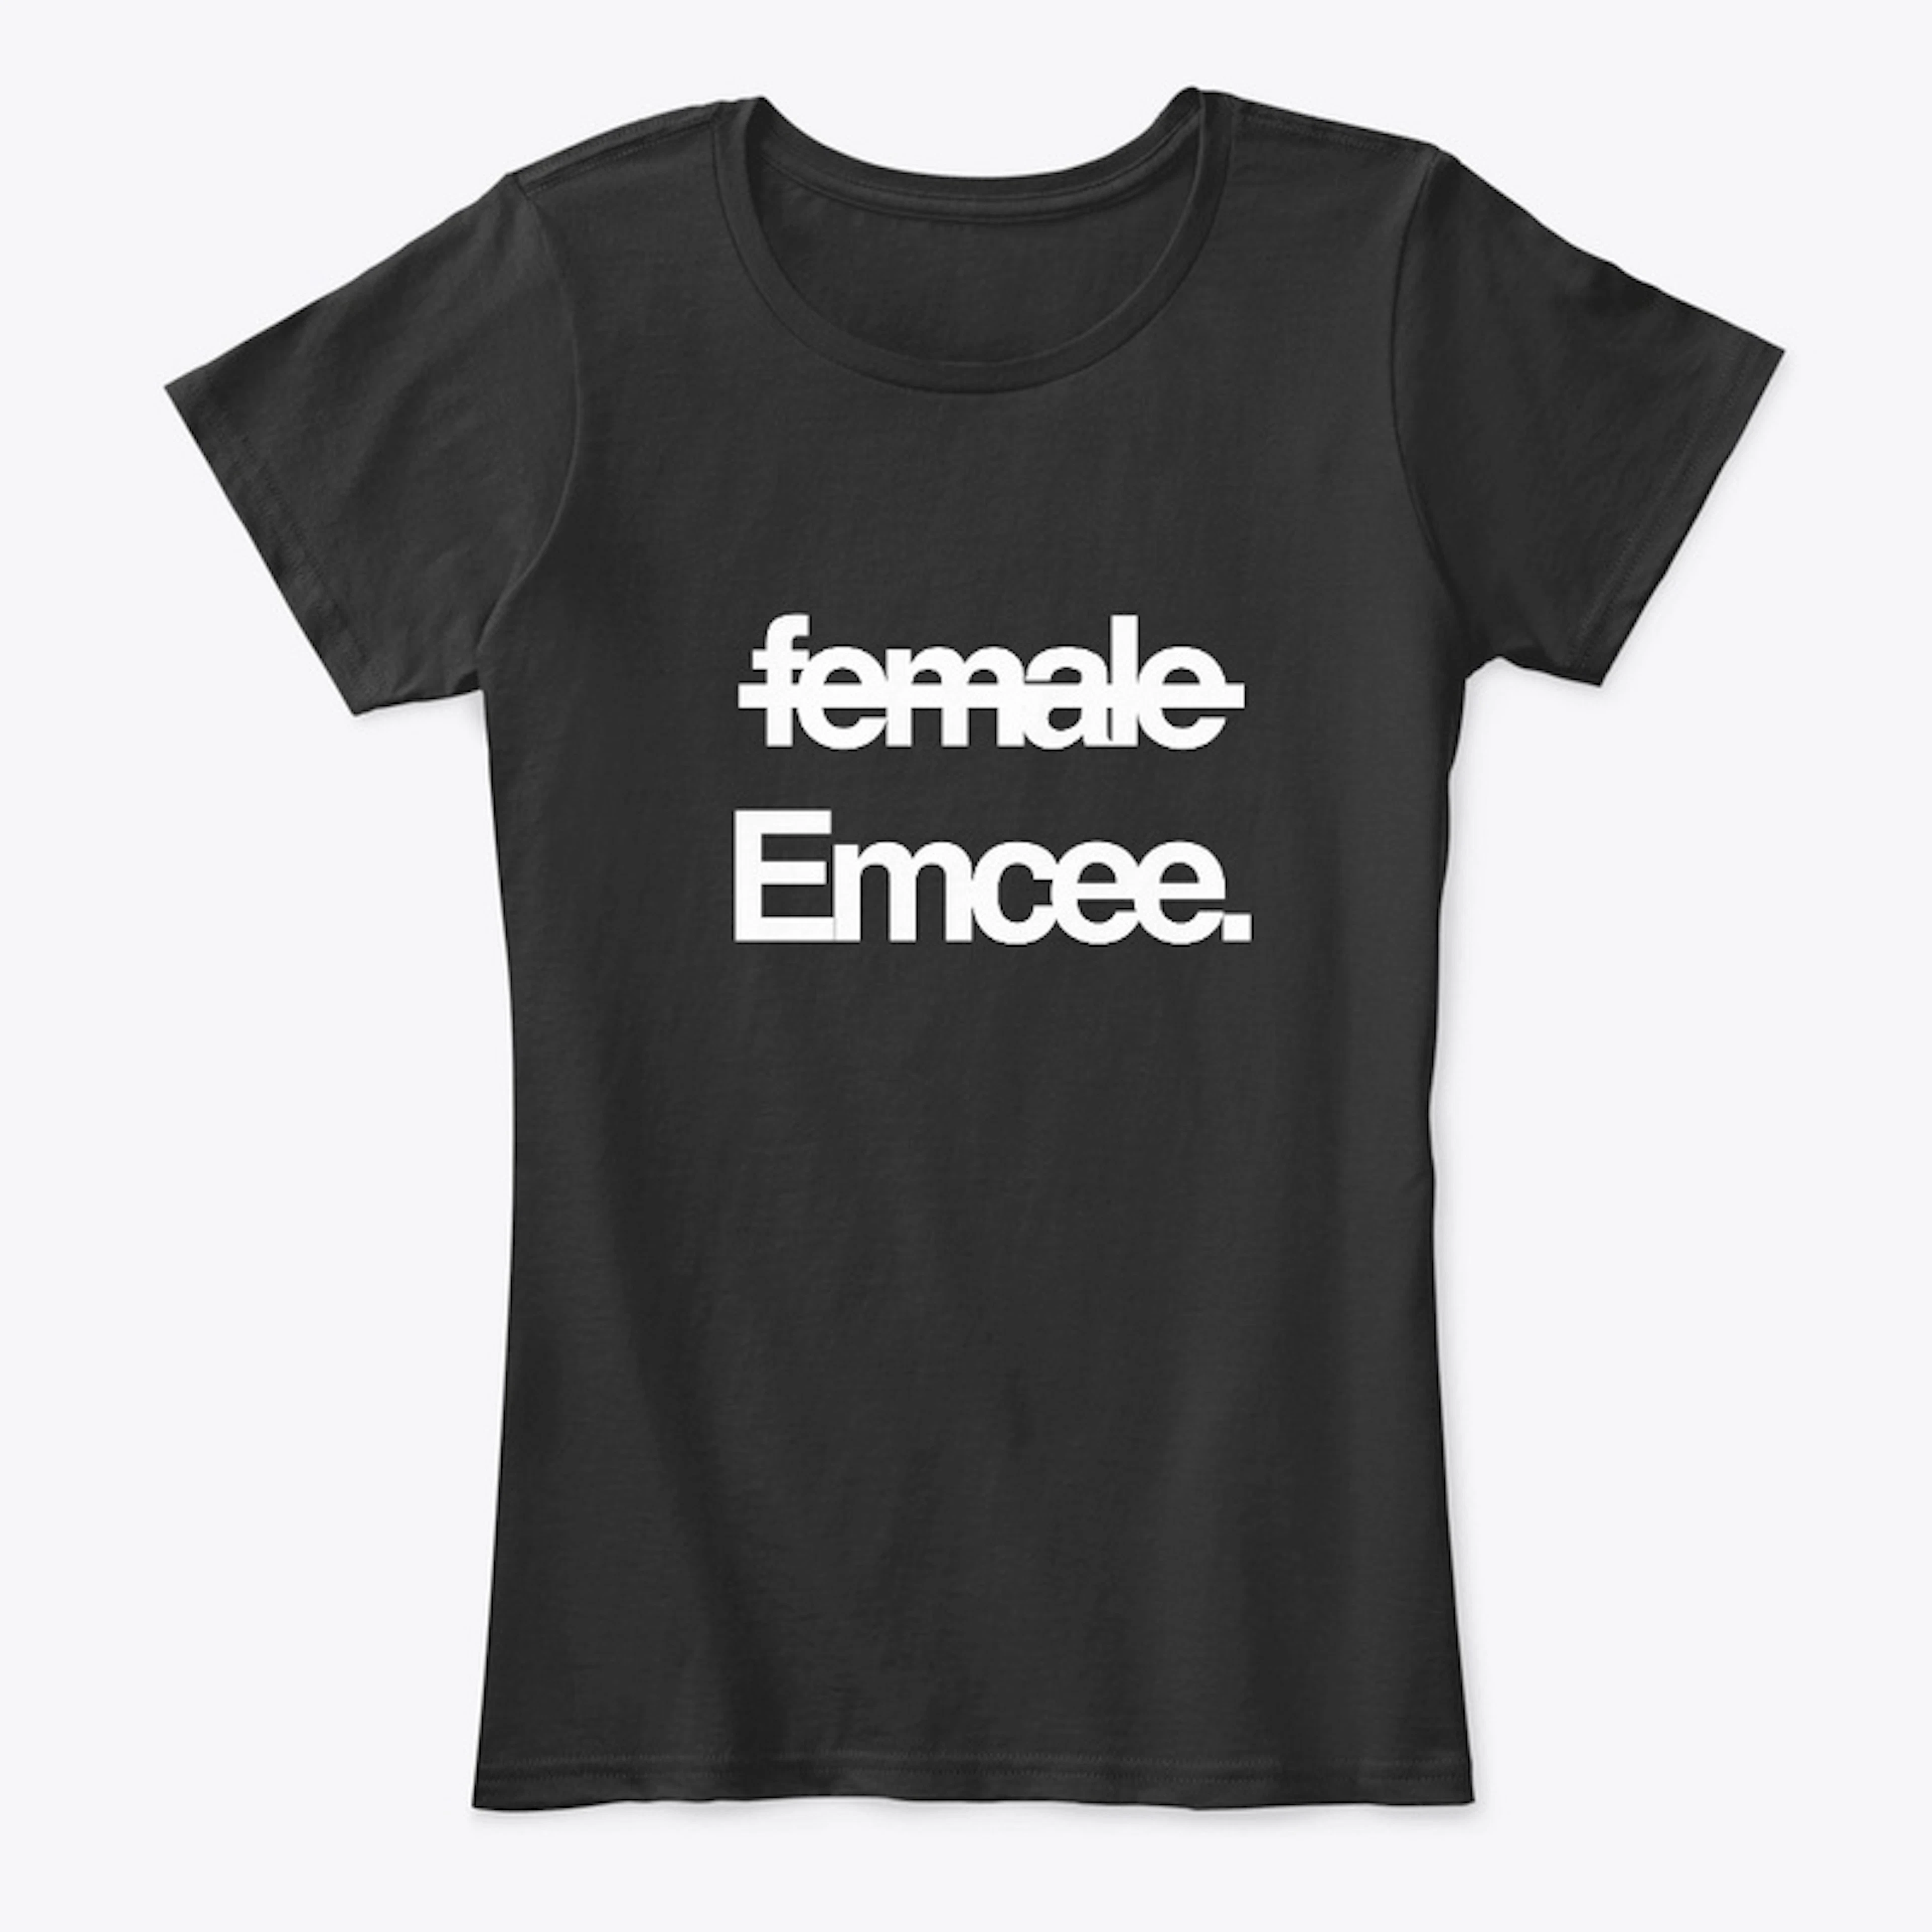 Female Emcee // Tee